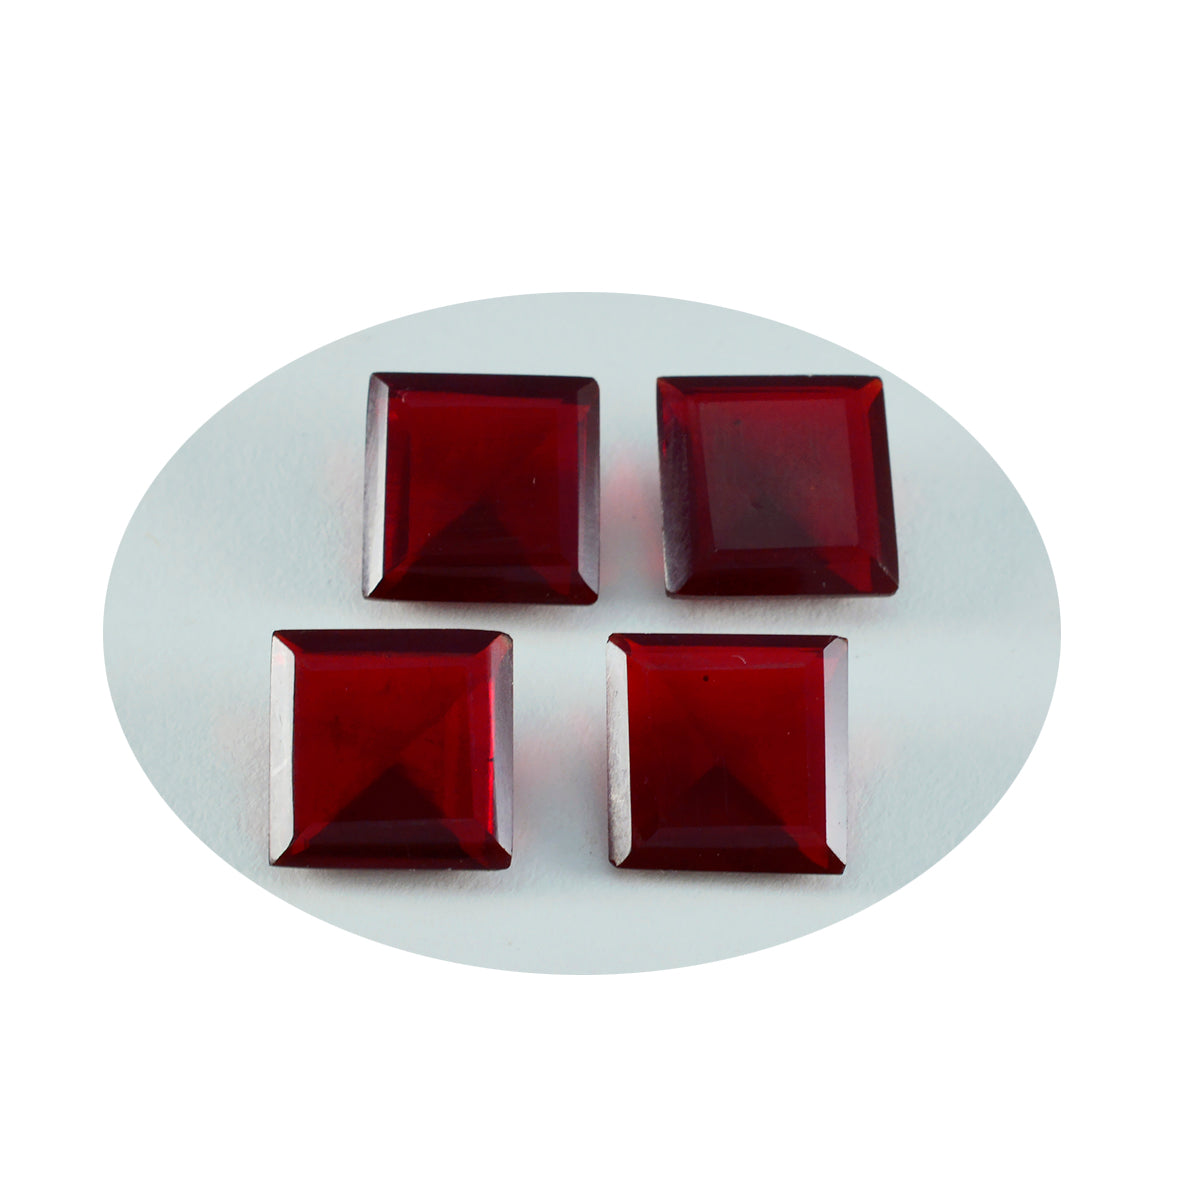 riyogems 1 шт. красный рубин cz граненый 15x15 мм квадратной формы милый качественный камень